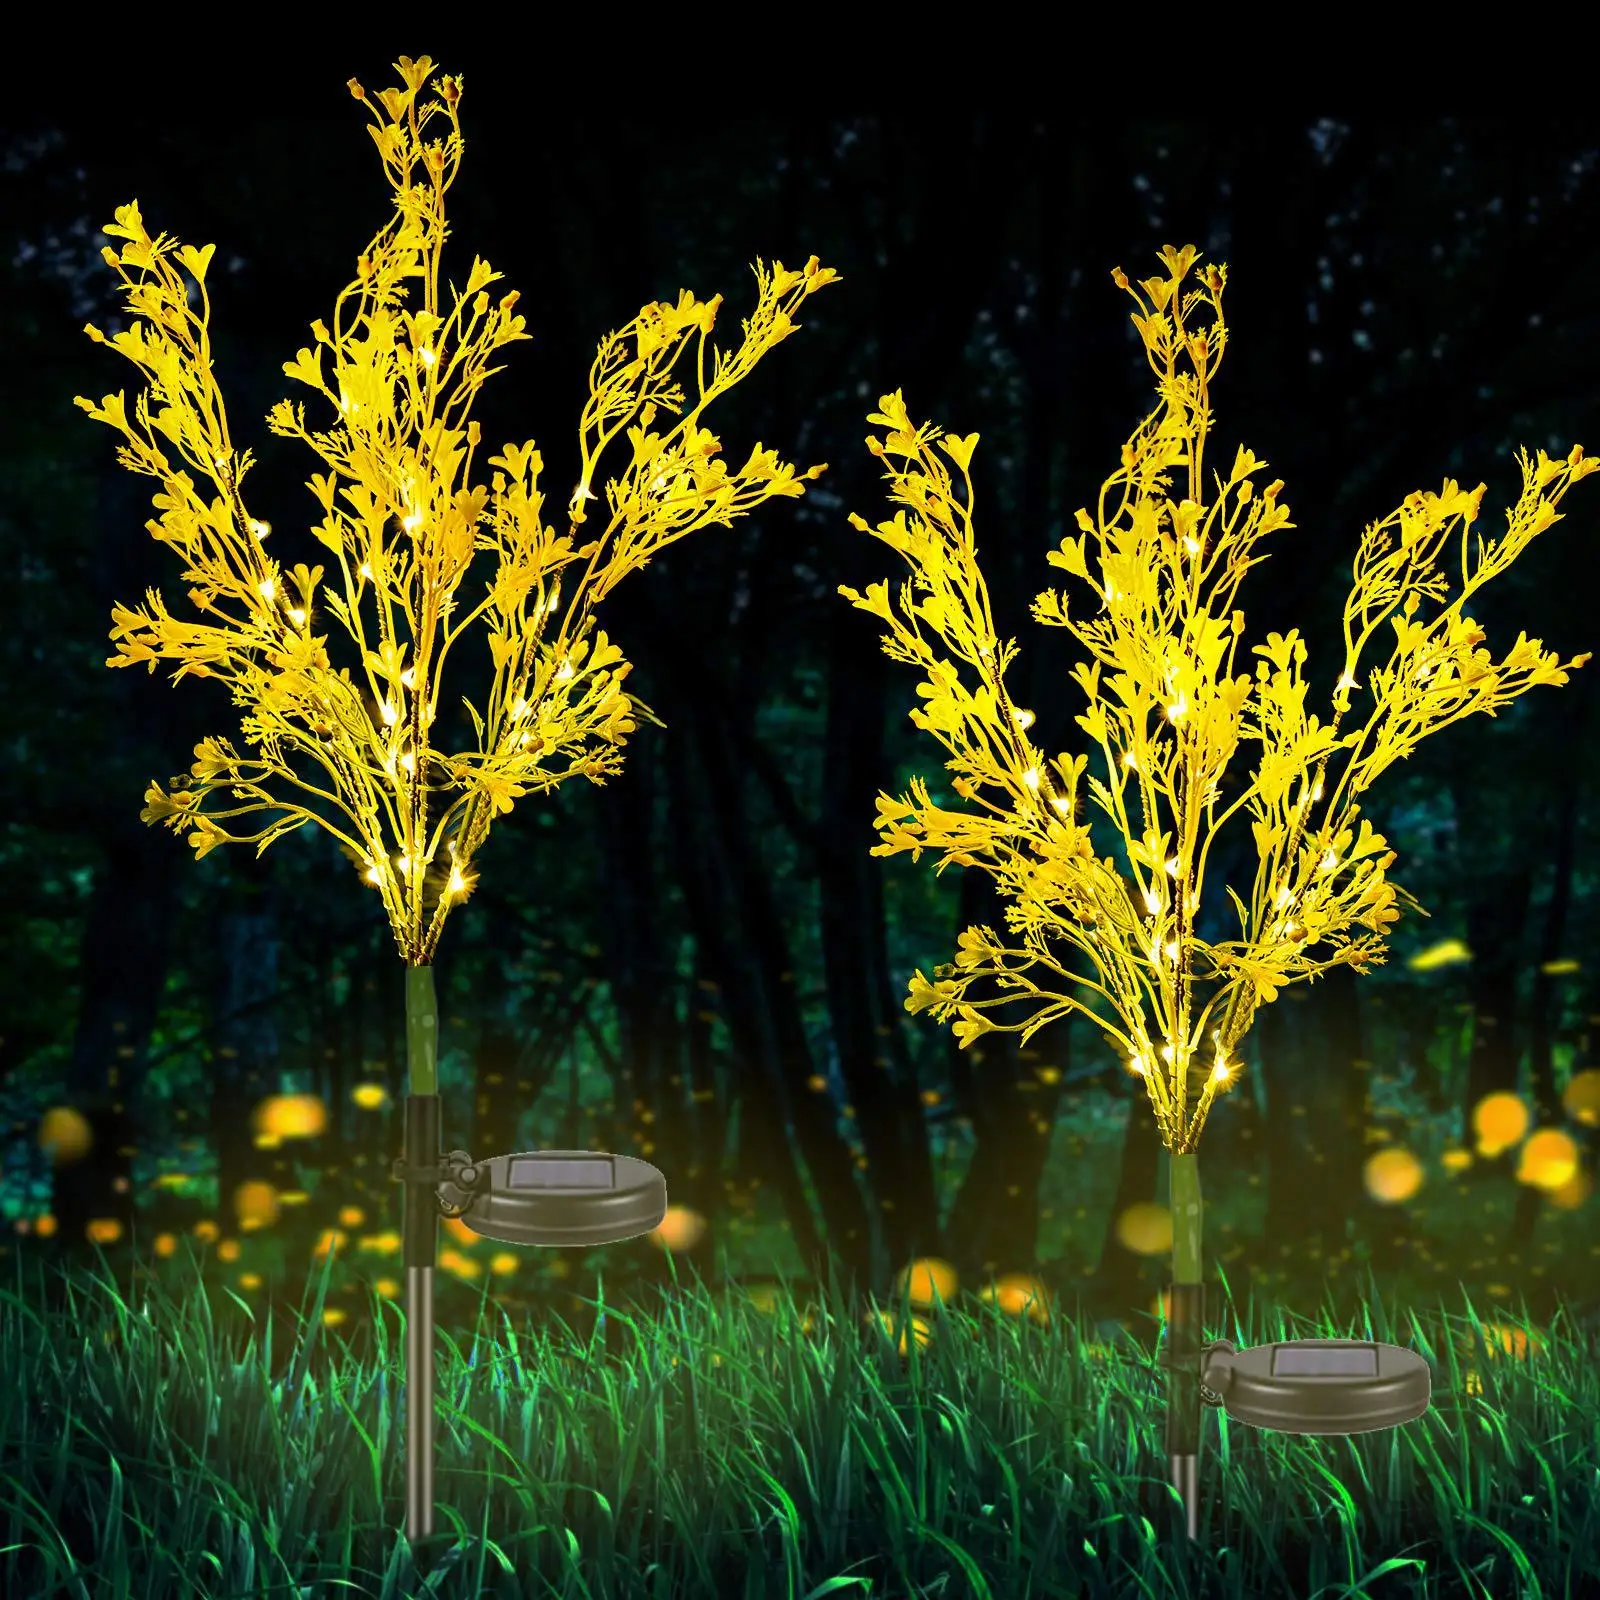 

Nova paisagem ao ar livre iluminação solar jardim luz led luzes decorativas colza flor lâmpada do gramado festa festiva fontes